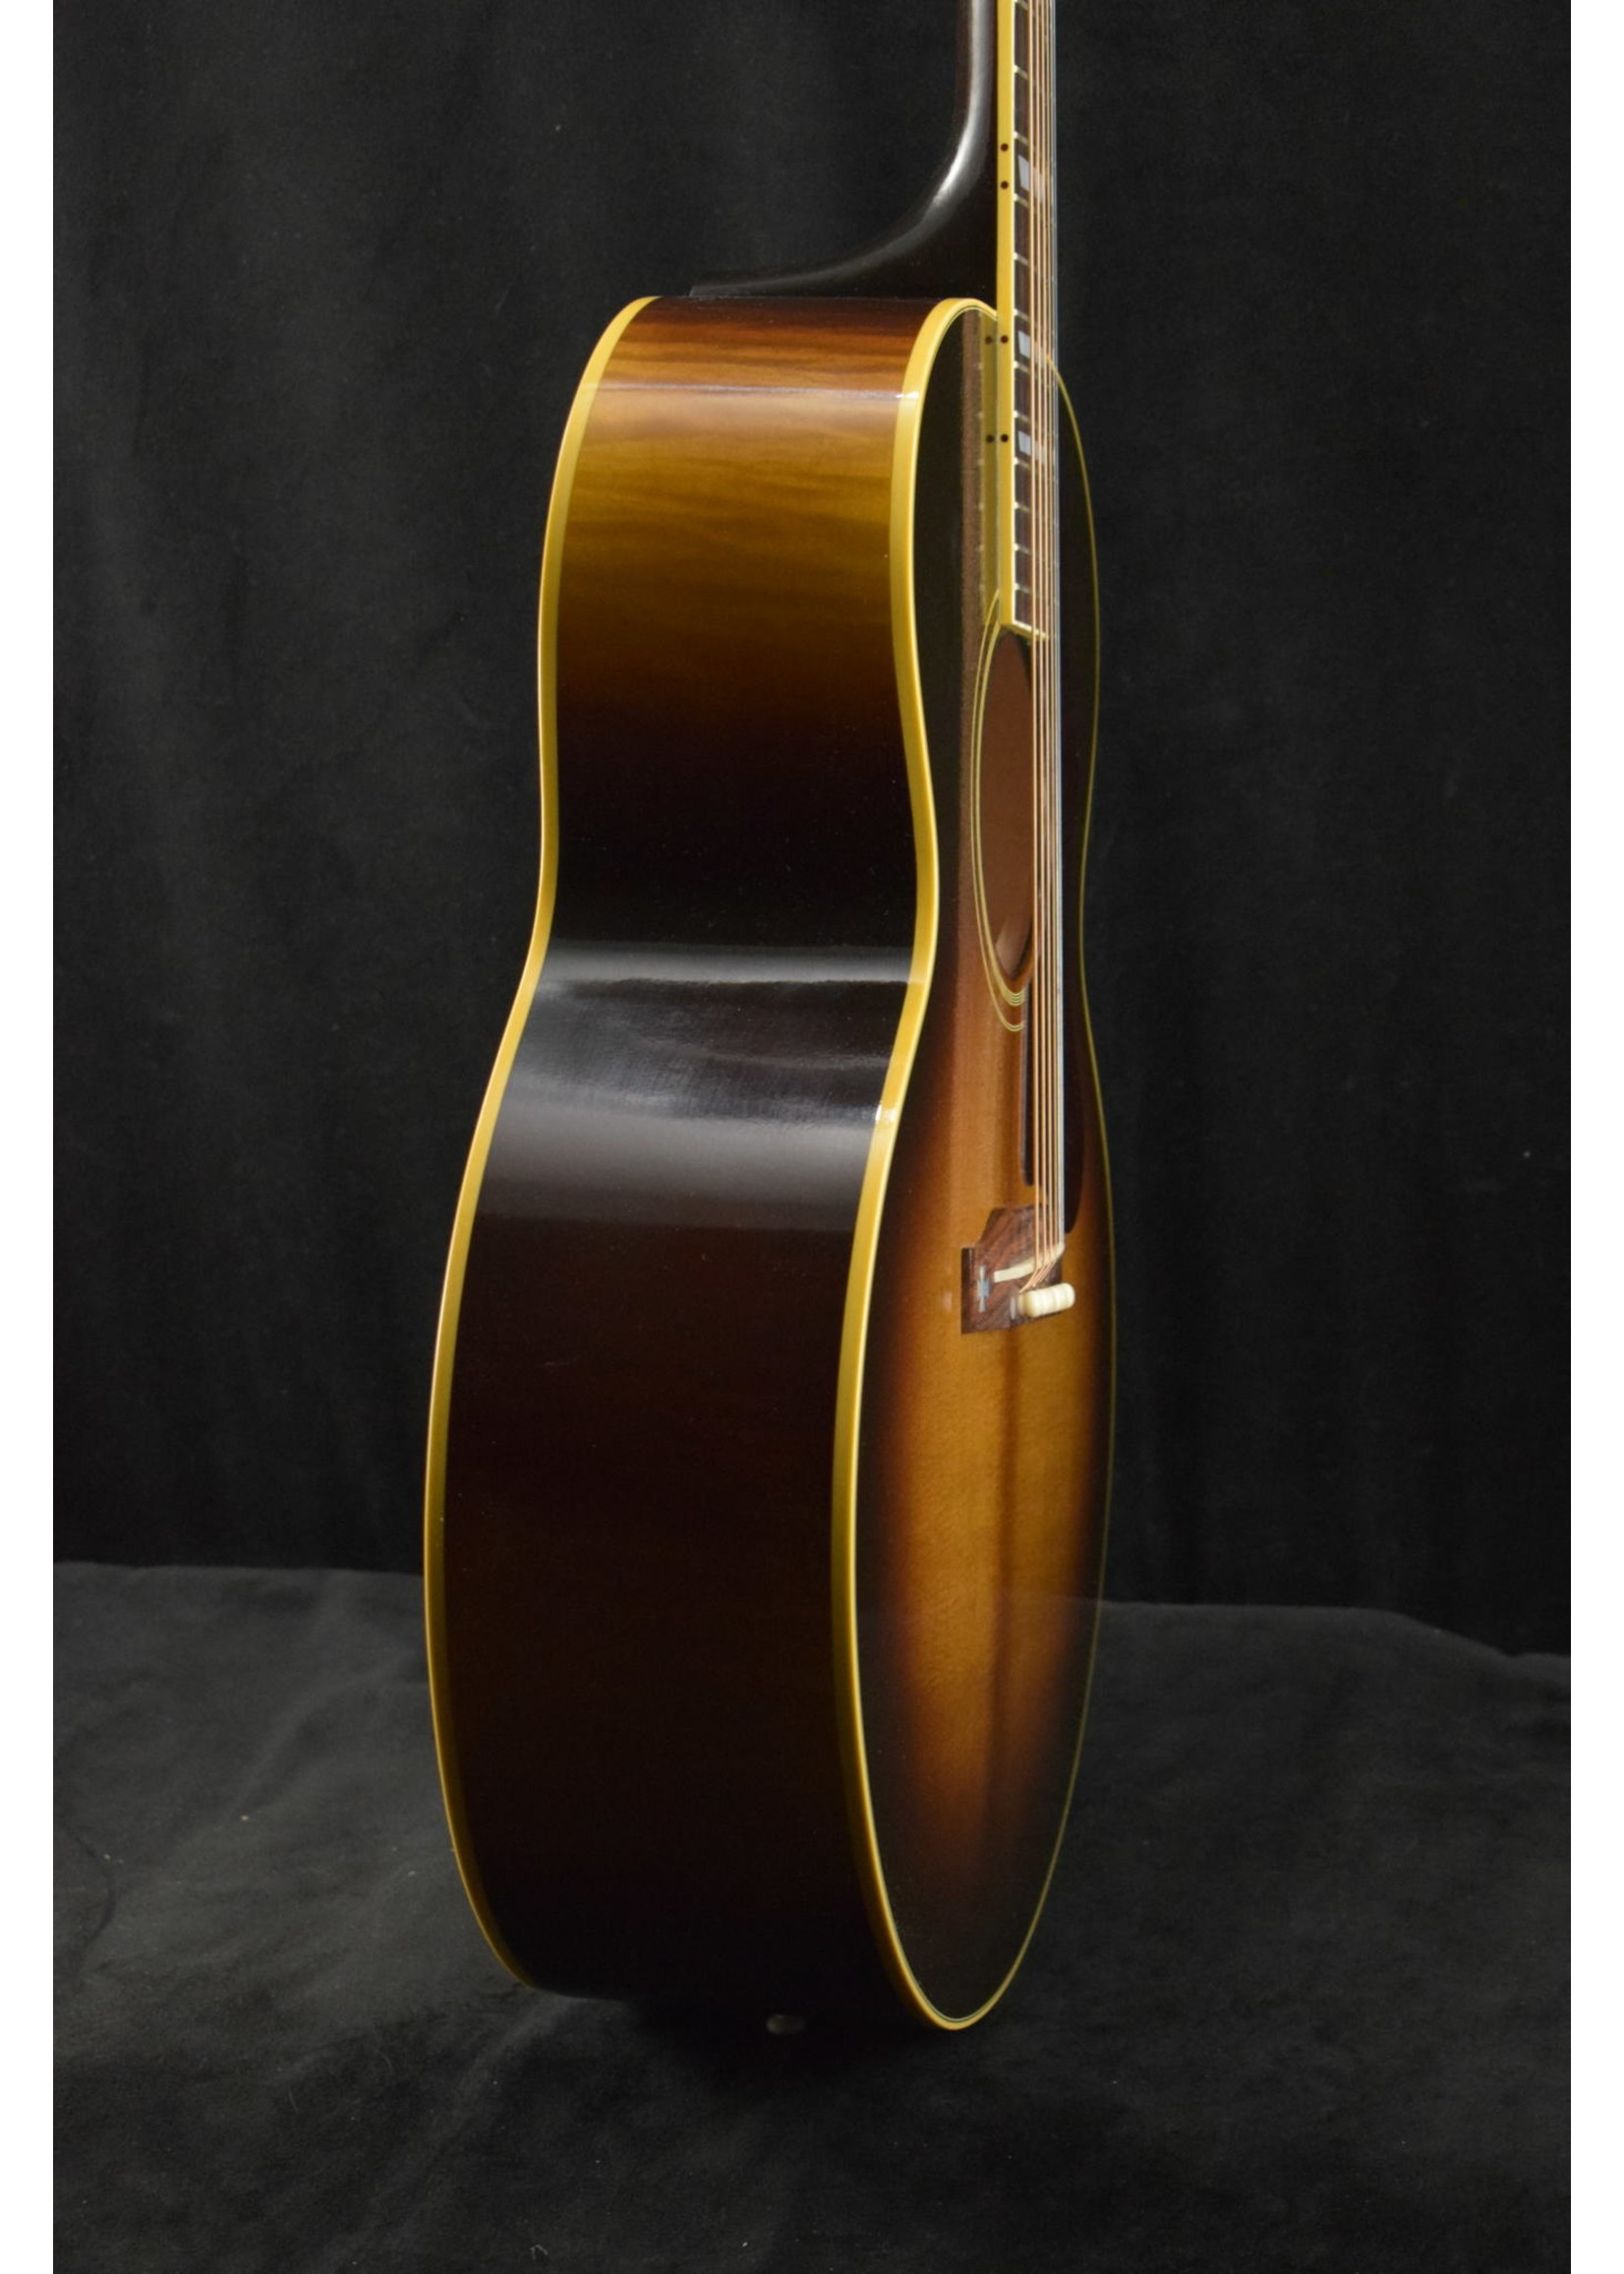 Gibson Gibson 1952 J-185 Vintage Sunburst